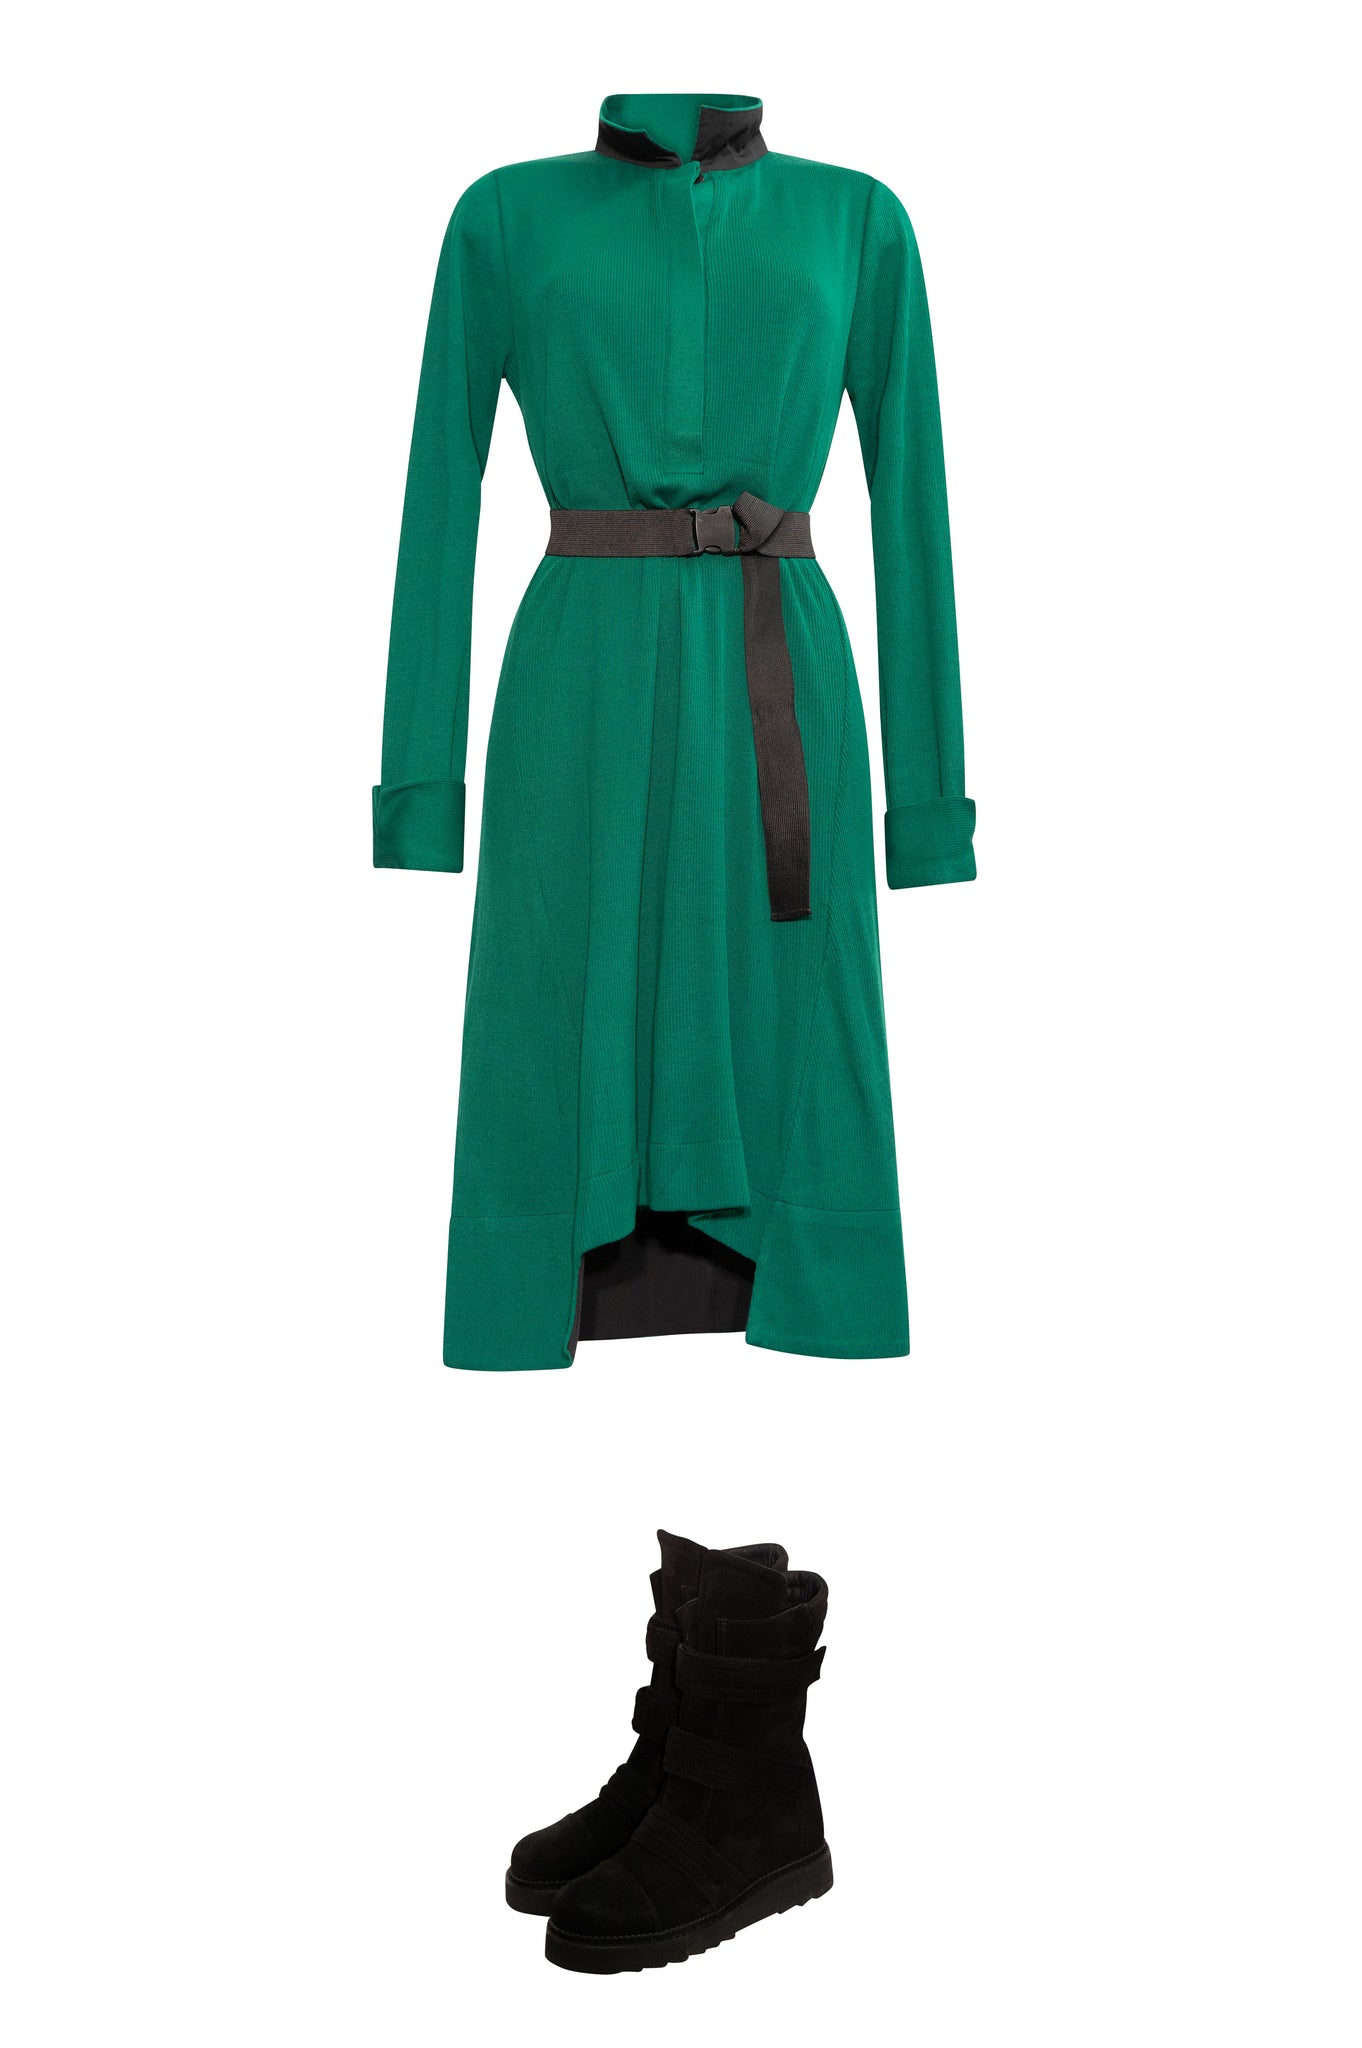 adddress R262 Dress Green